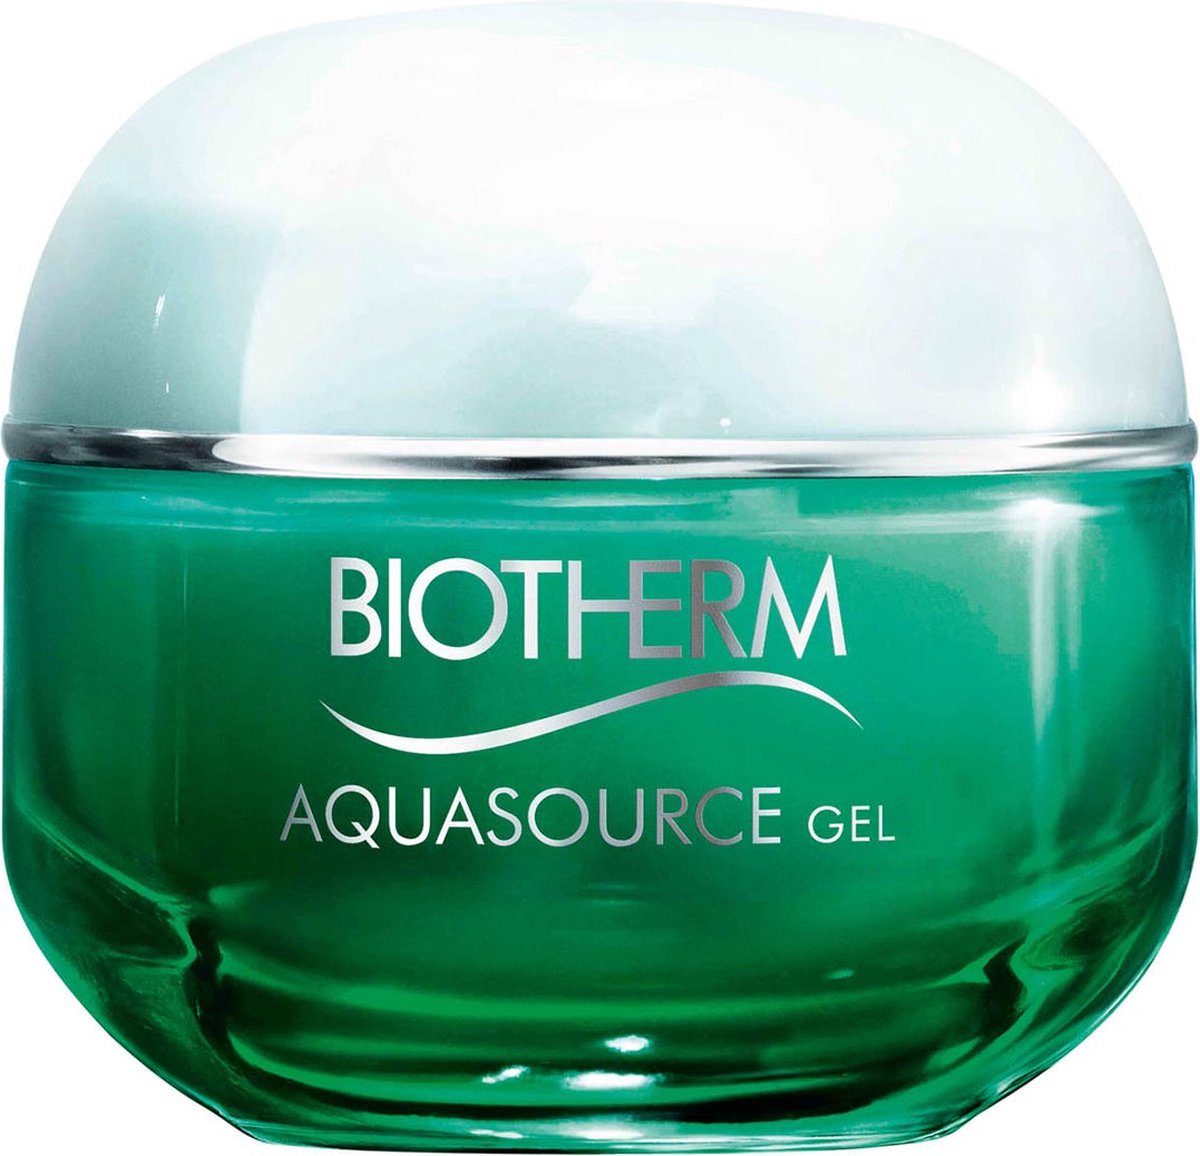 Biotherm Aquasource Gel Gezichtscrème - 50 ml